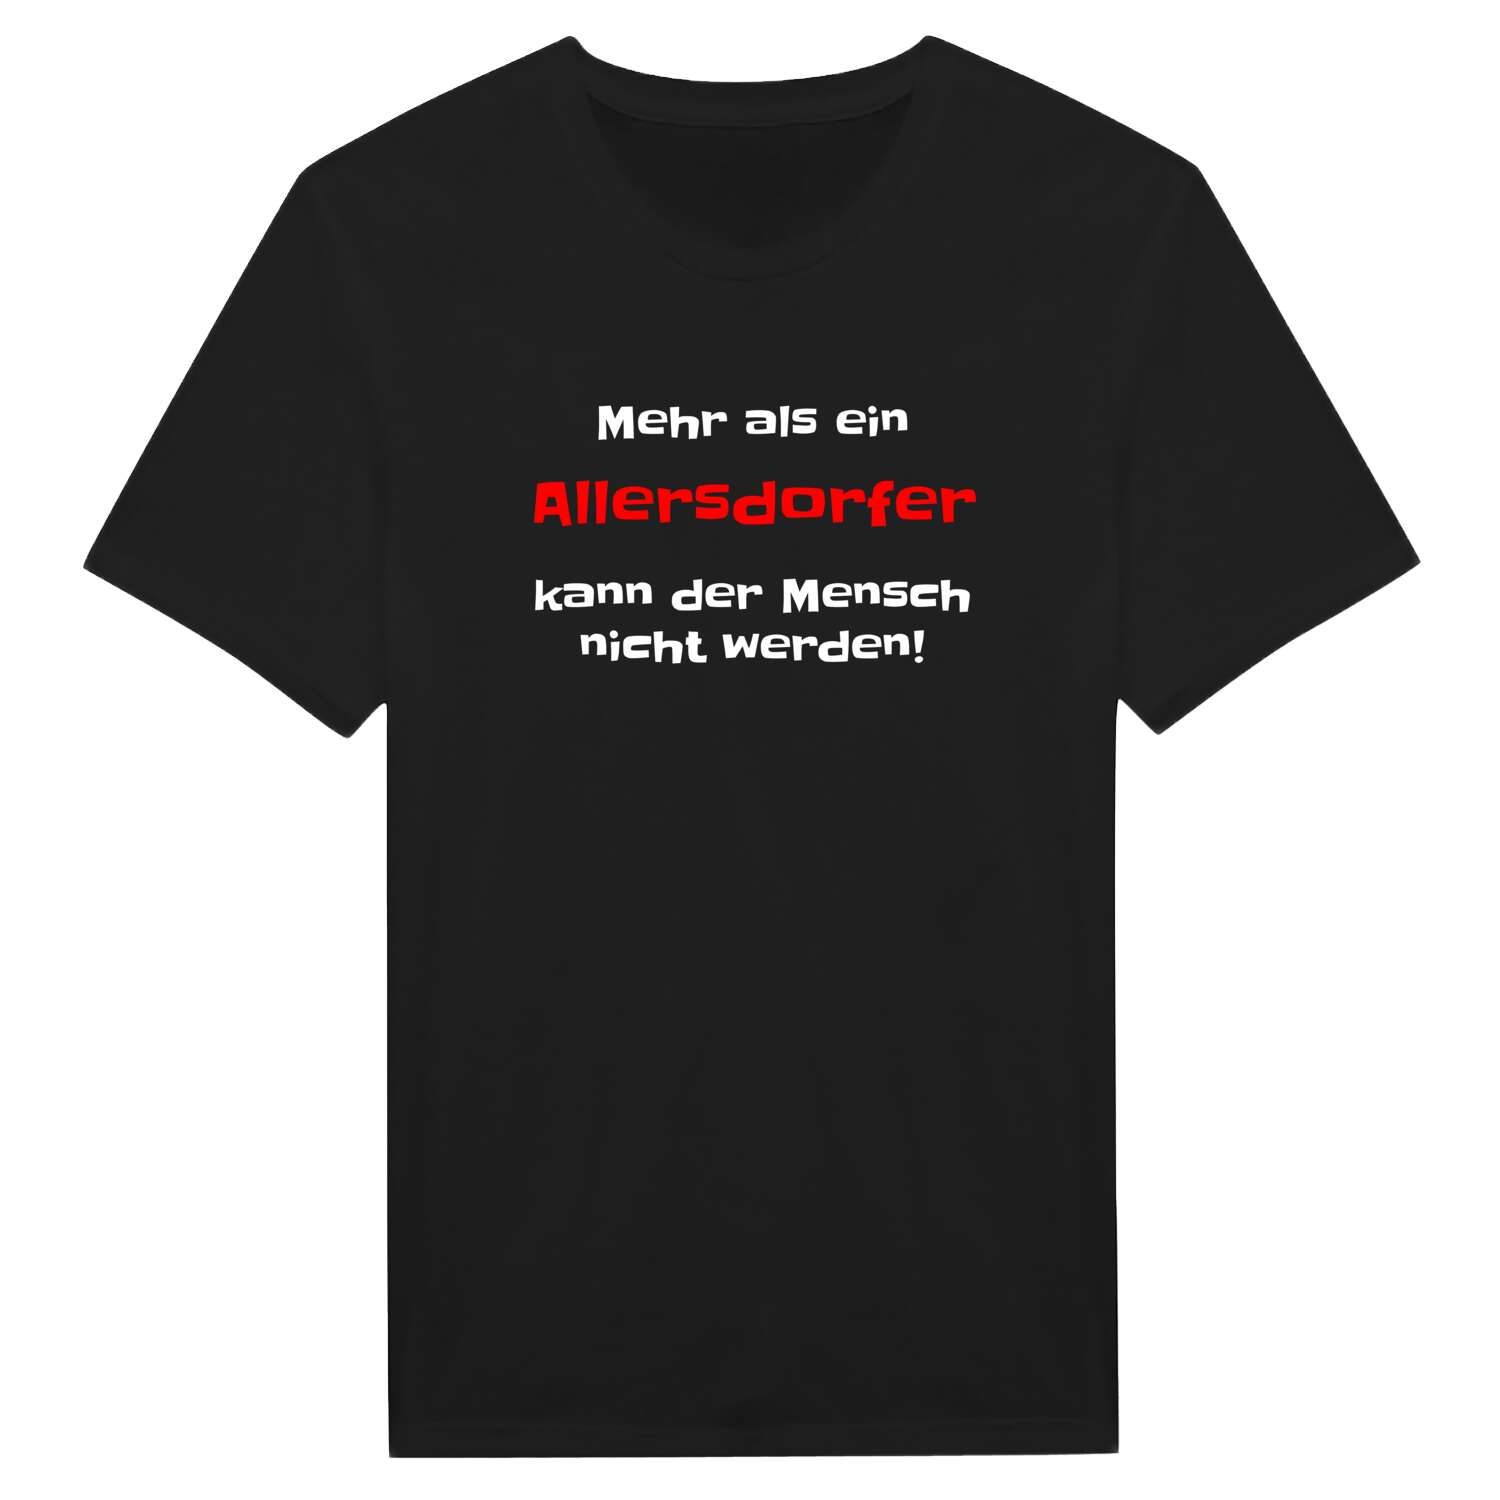 Allersdorf T-Shirt »Mehr als ein«